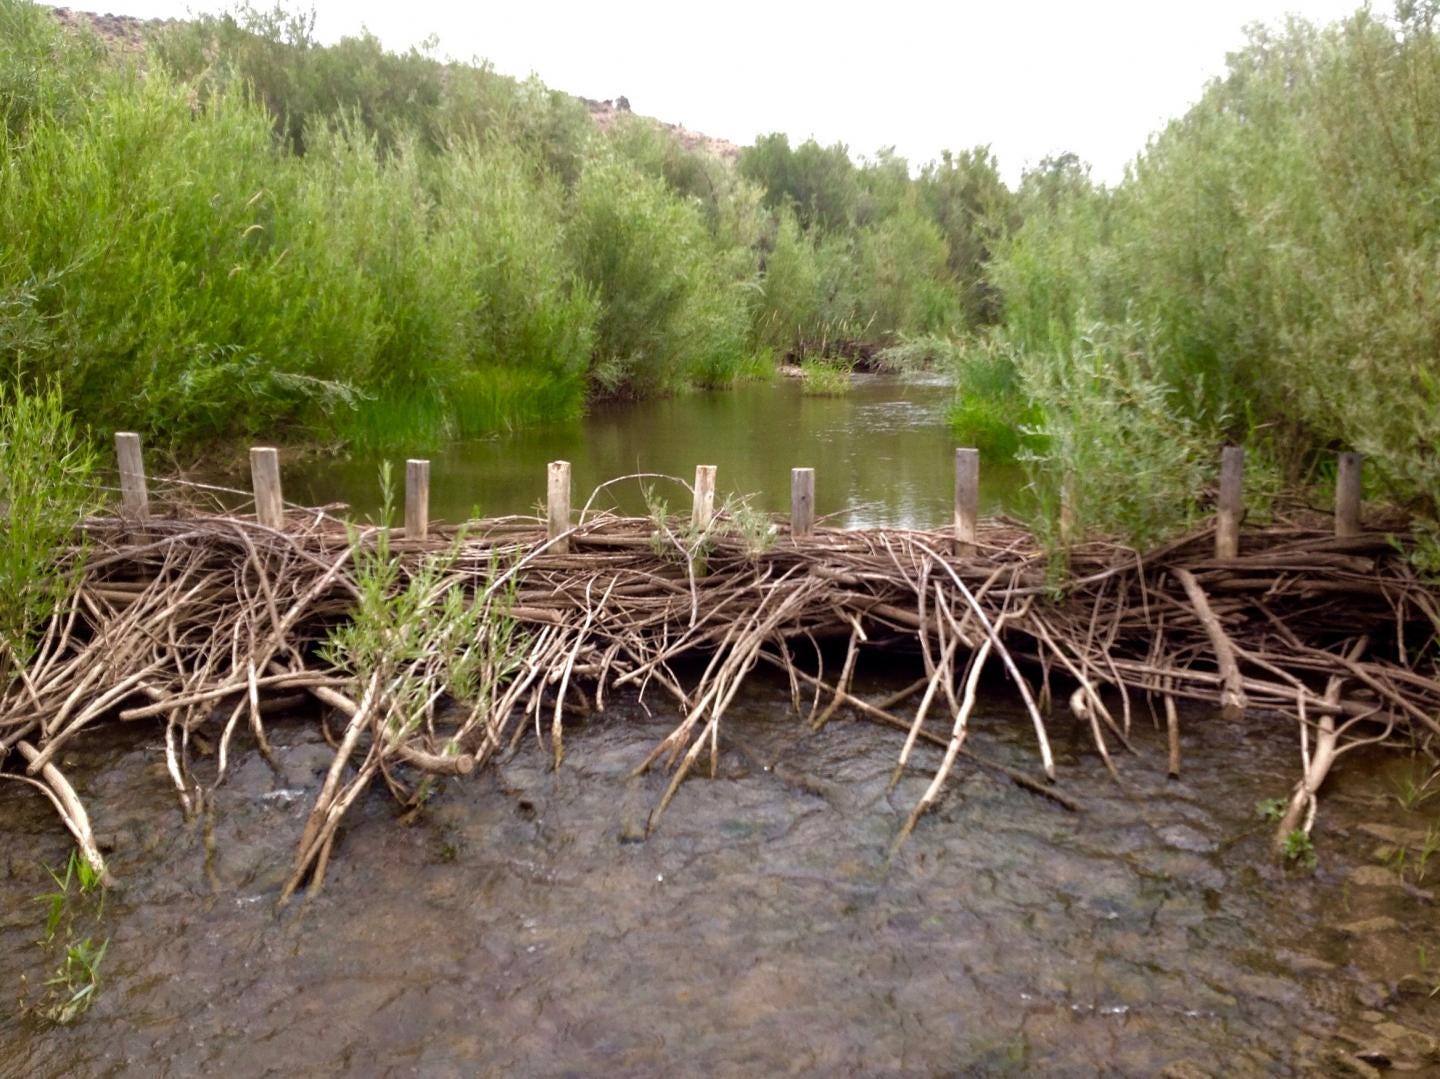 Beaver Dam Analog Built on Ore [IMAGE] | EurekAlert! Science News Releases